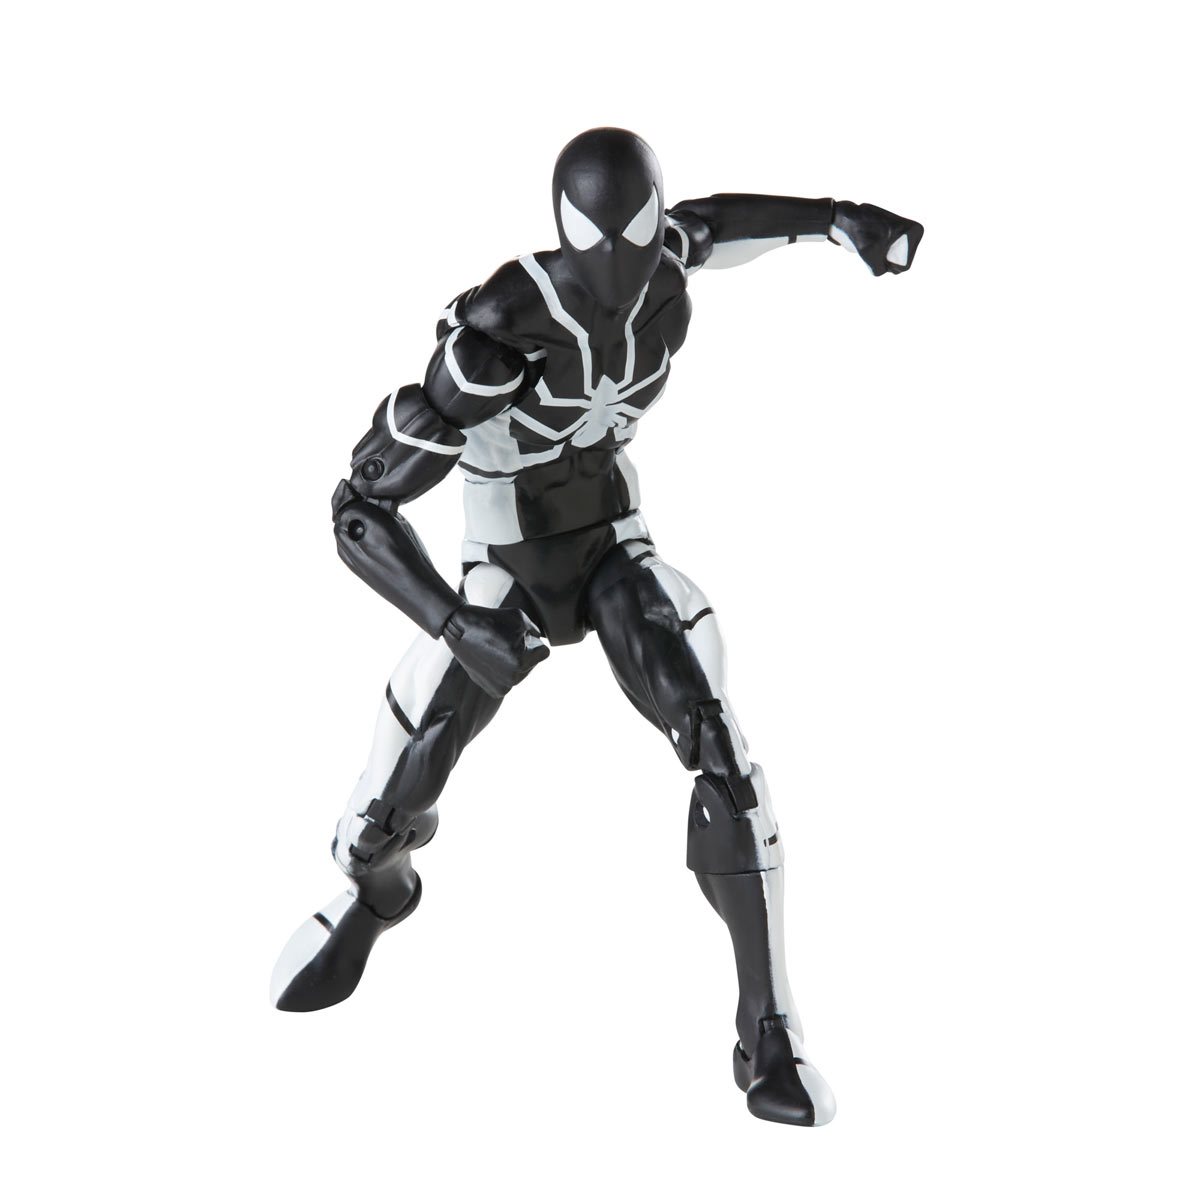 adidas Ultra 4D Marvel Spider-Man 2 Men's - IG5337 - US